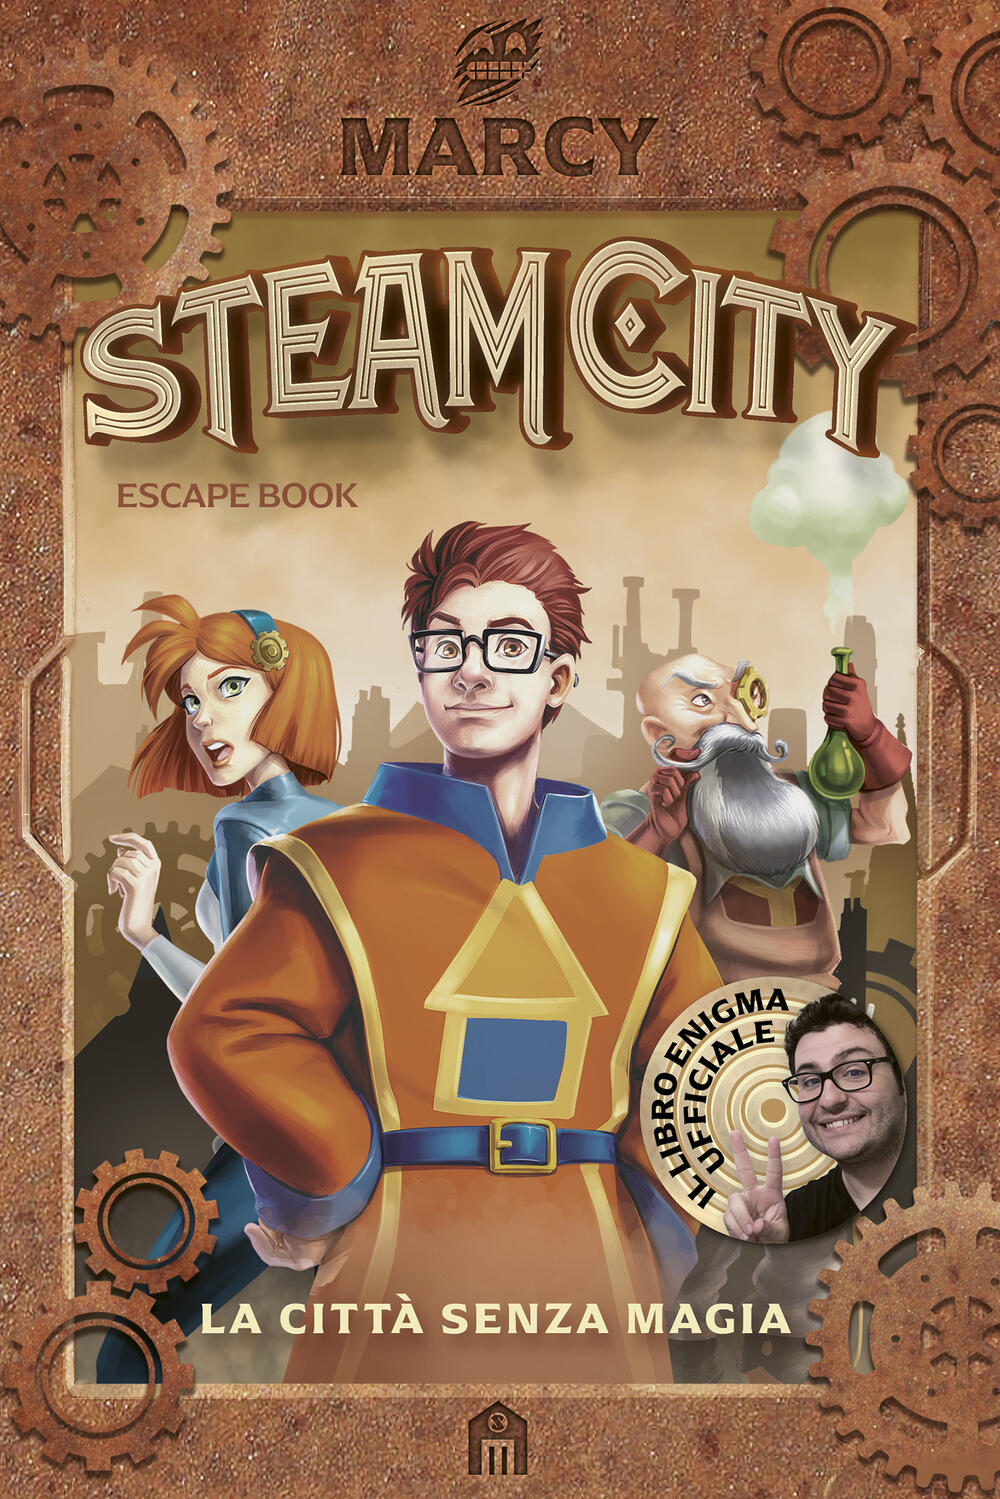 Steam City. La città senza magia. Escape book di Marcy - Brossura